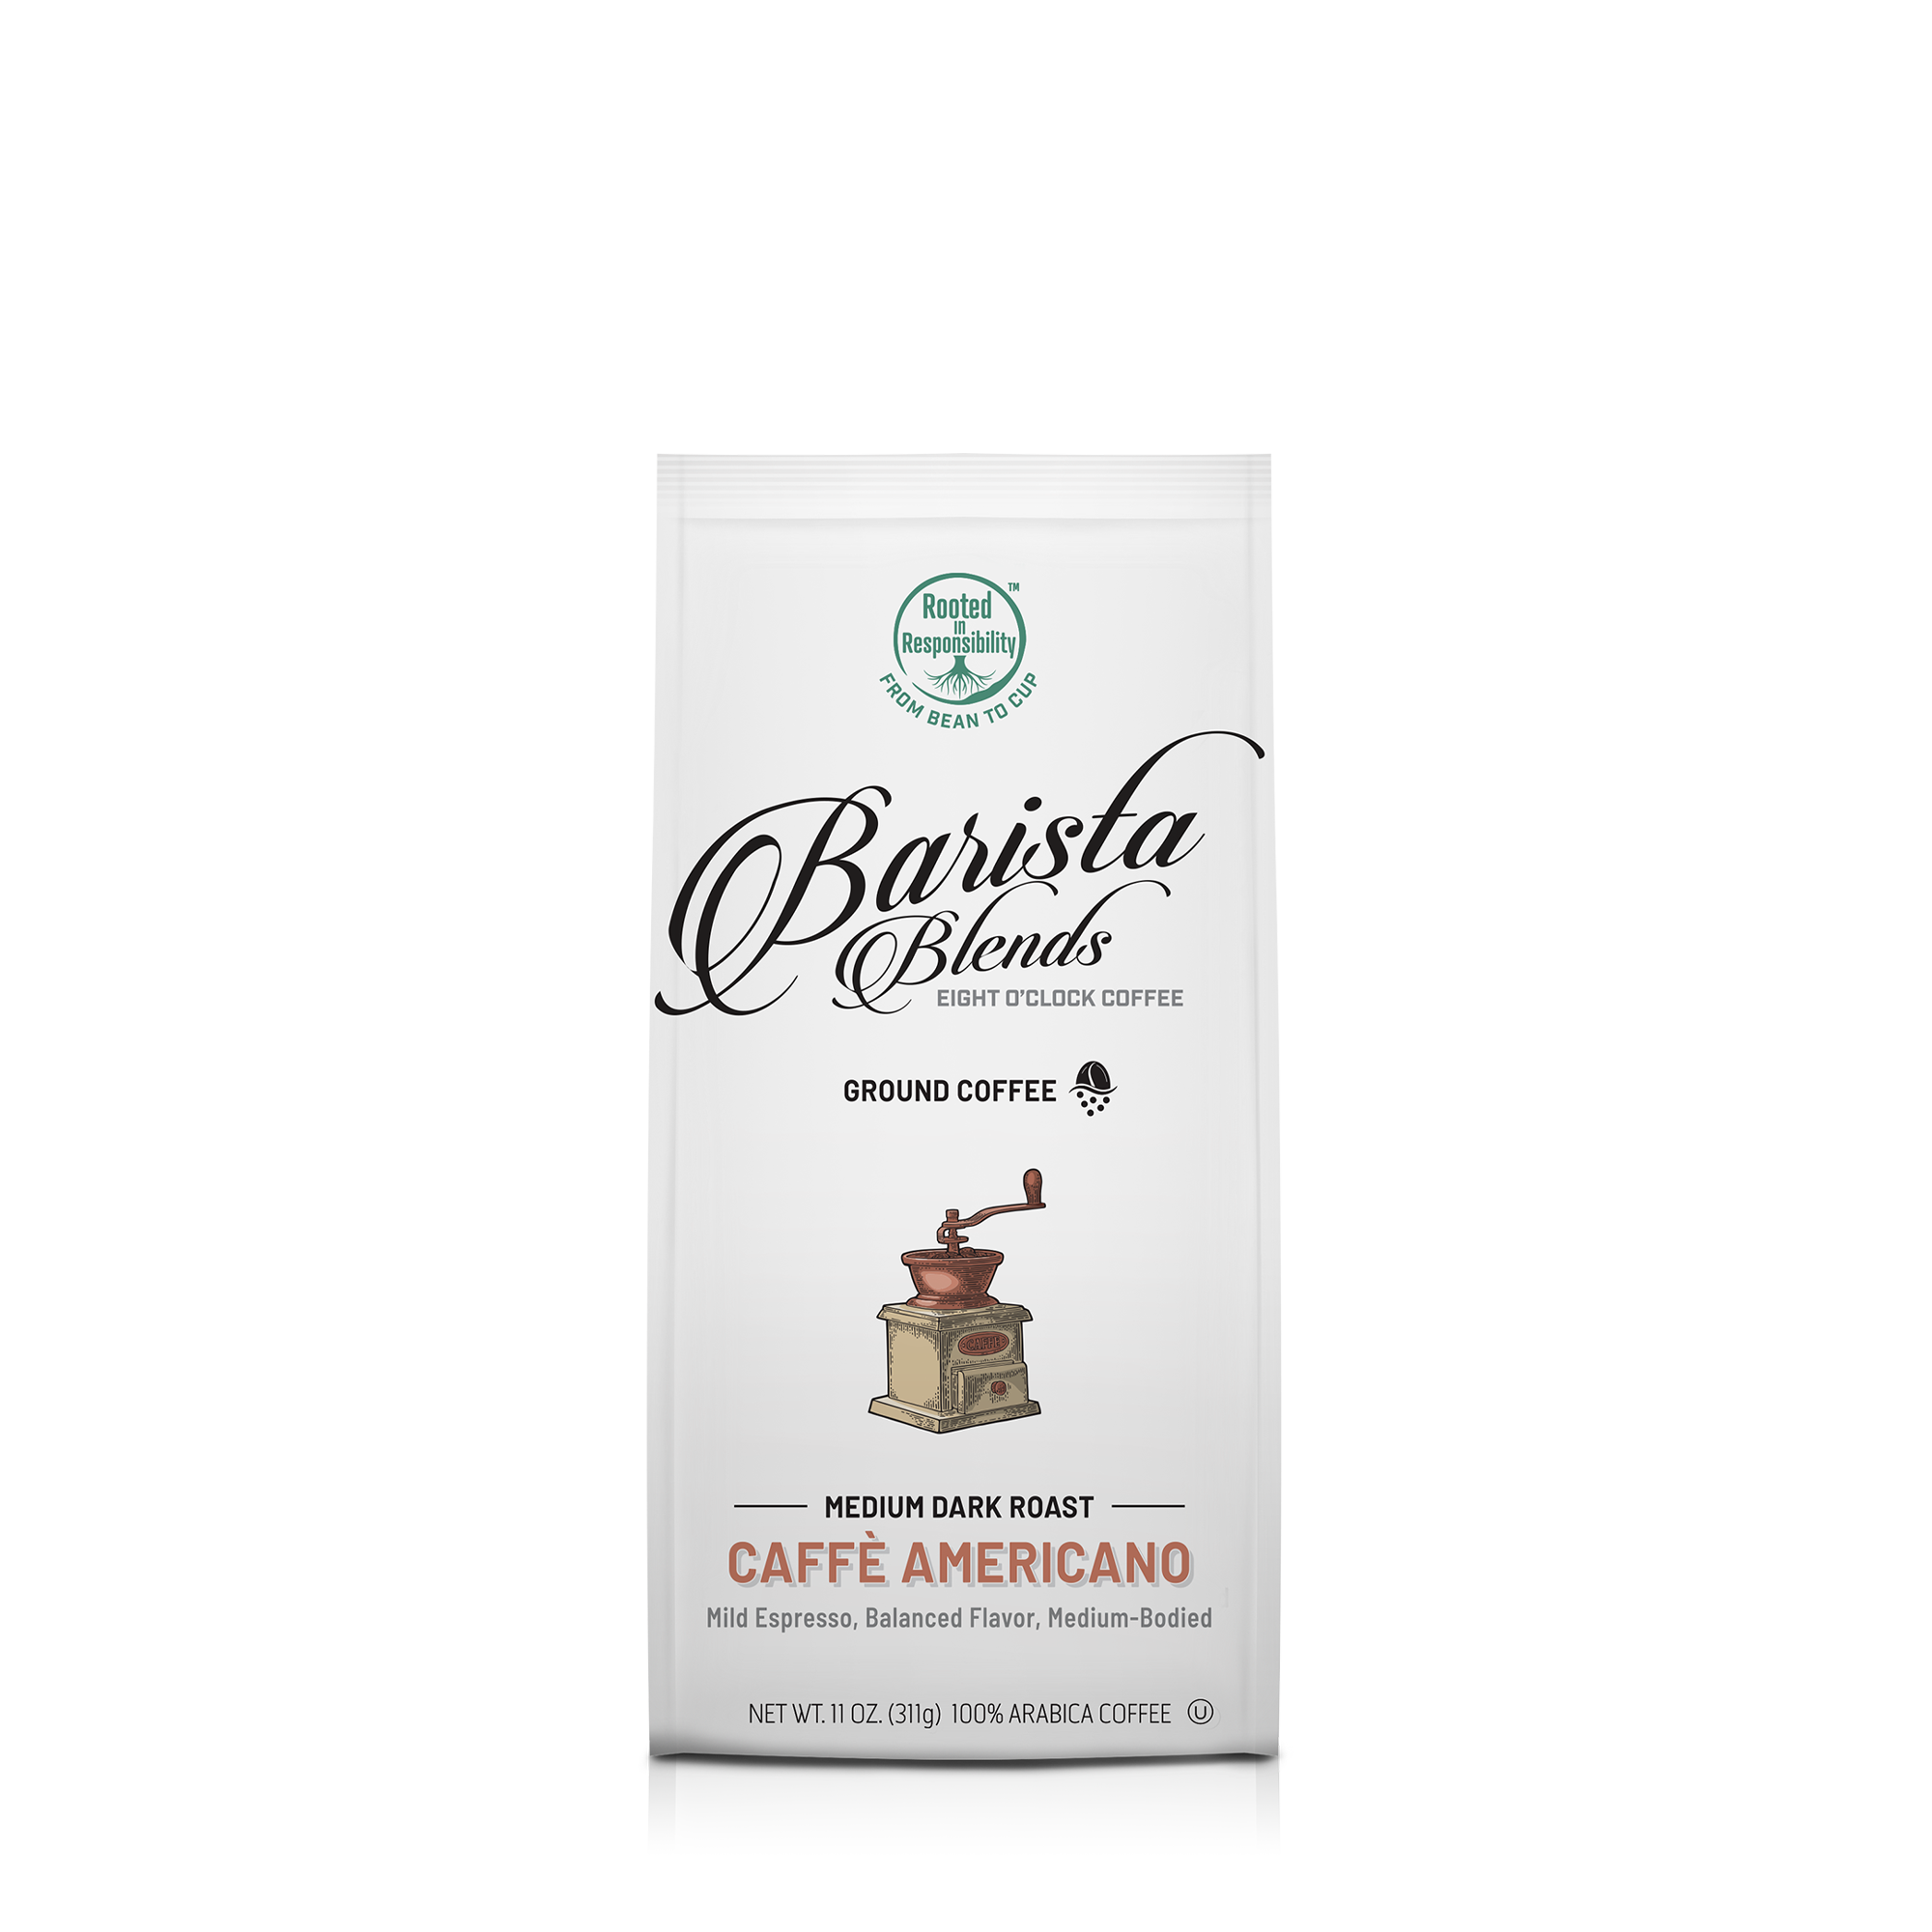 Bundle & Save! Espresso & Cafecito Cup ~Save $5.00~